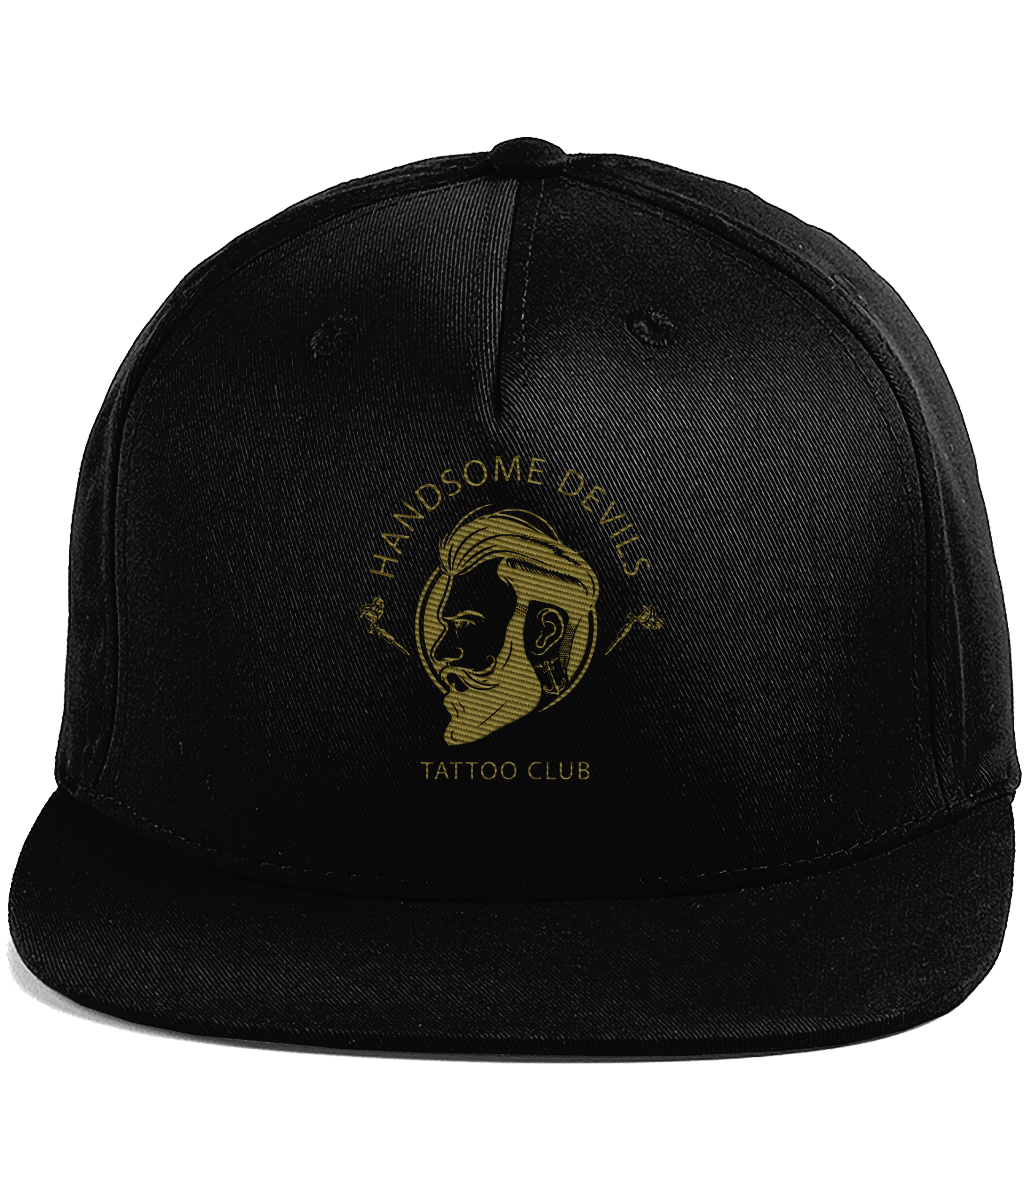 Cotton Rapper Black cap